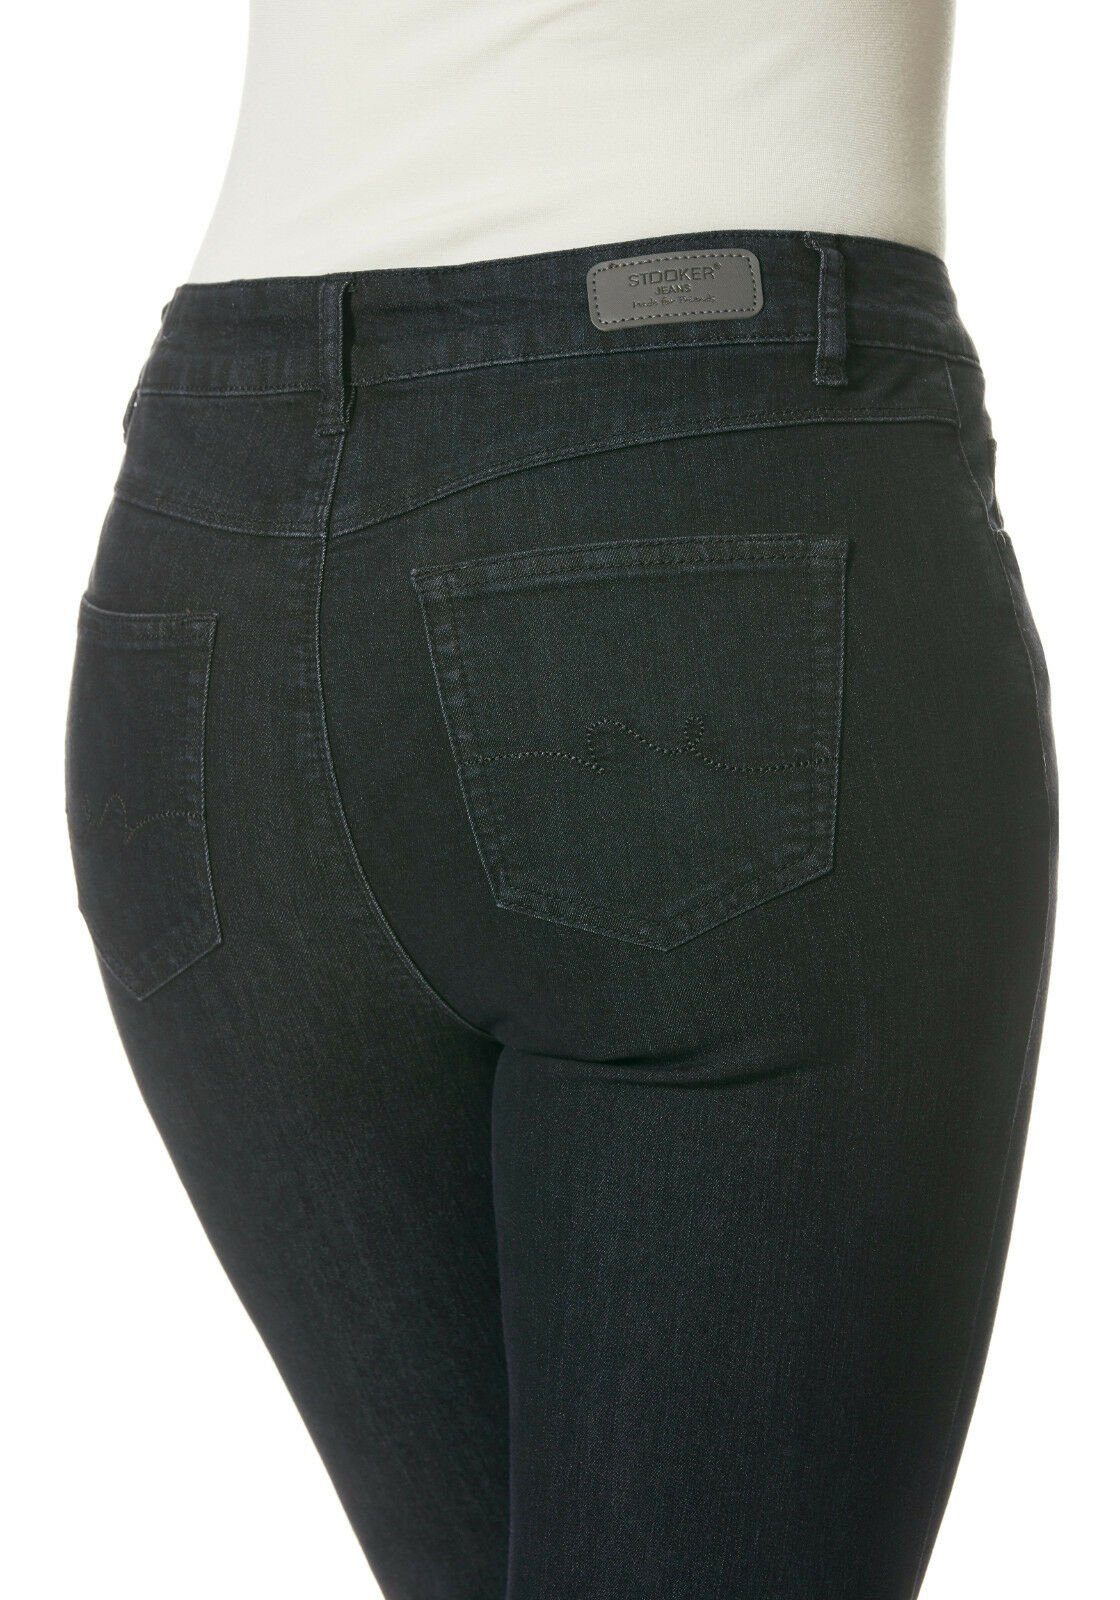 Blue Fit Black Straight Stretch Jeans- WOMEN STOOKER Zermatt - Straight-Jeans